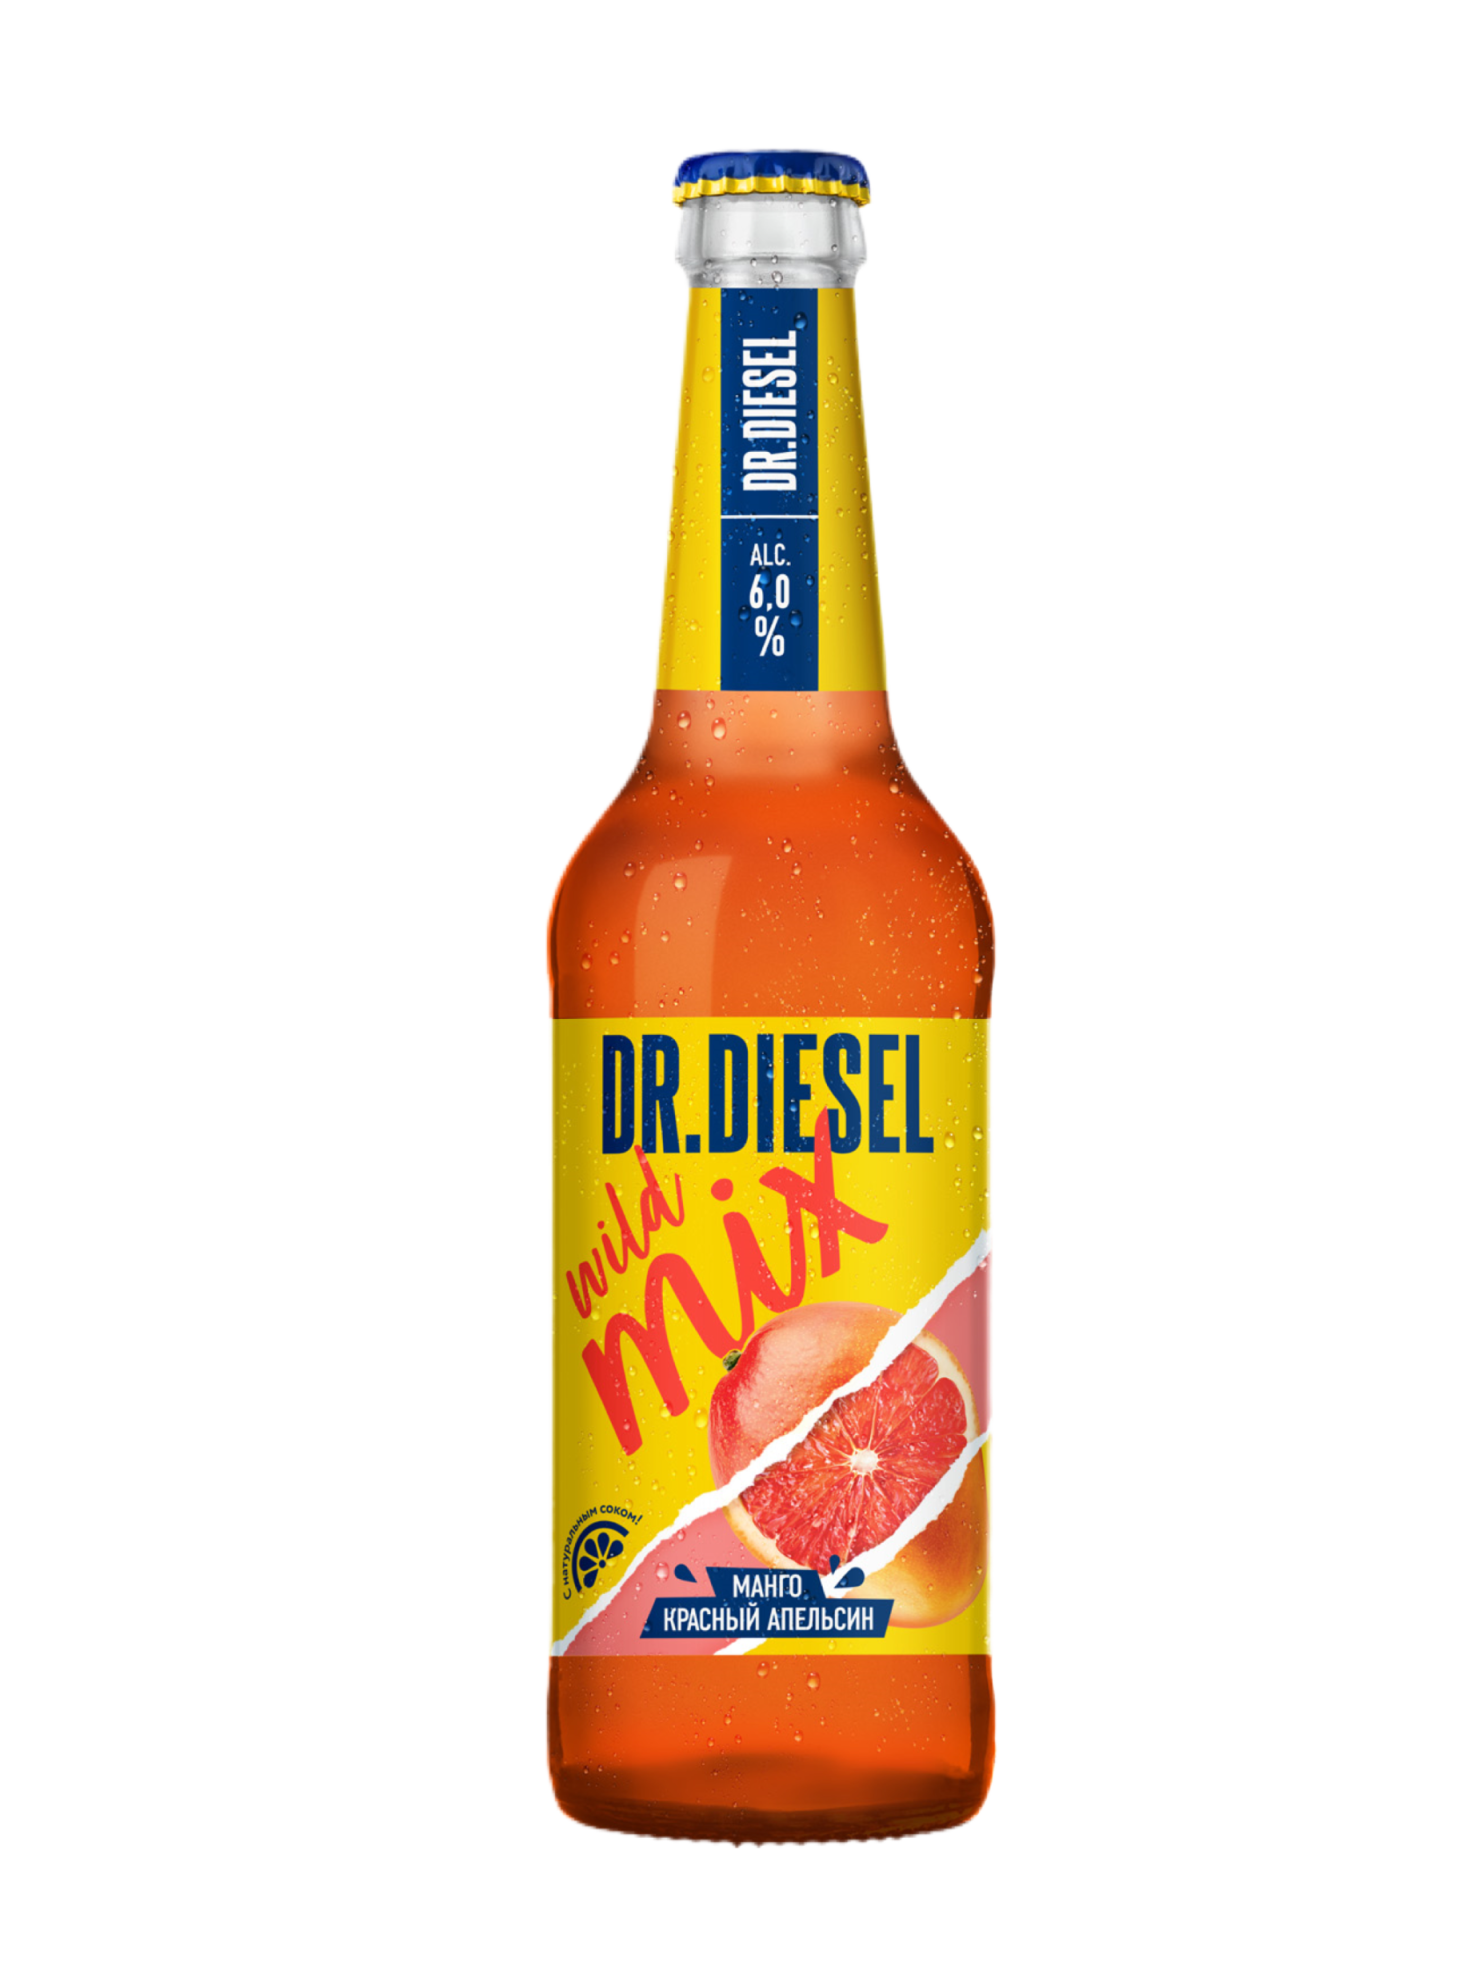 Mr diesel. Пивной напиток доктор дизель манго и красный апельсин. Пивной напиток Dr Diesel. Напиток Dr Diesel манго. Доктор дизель пиво манго.